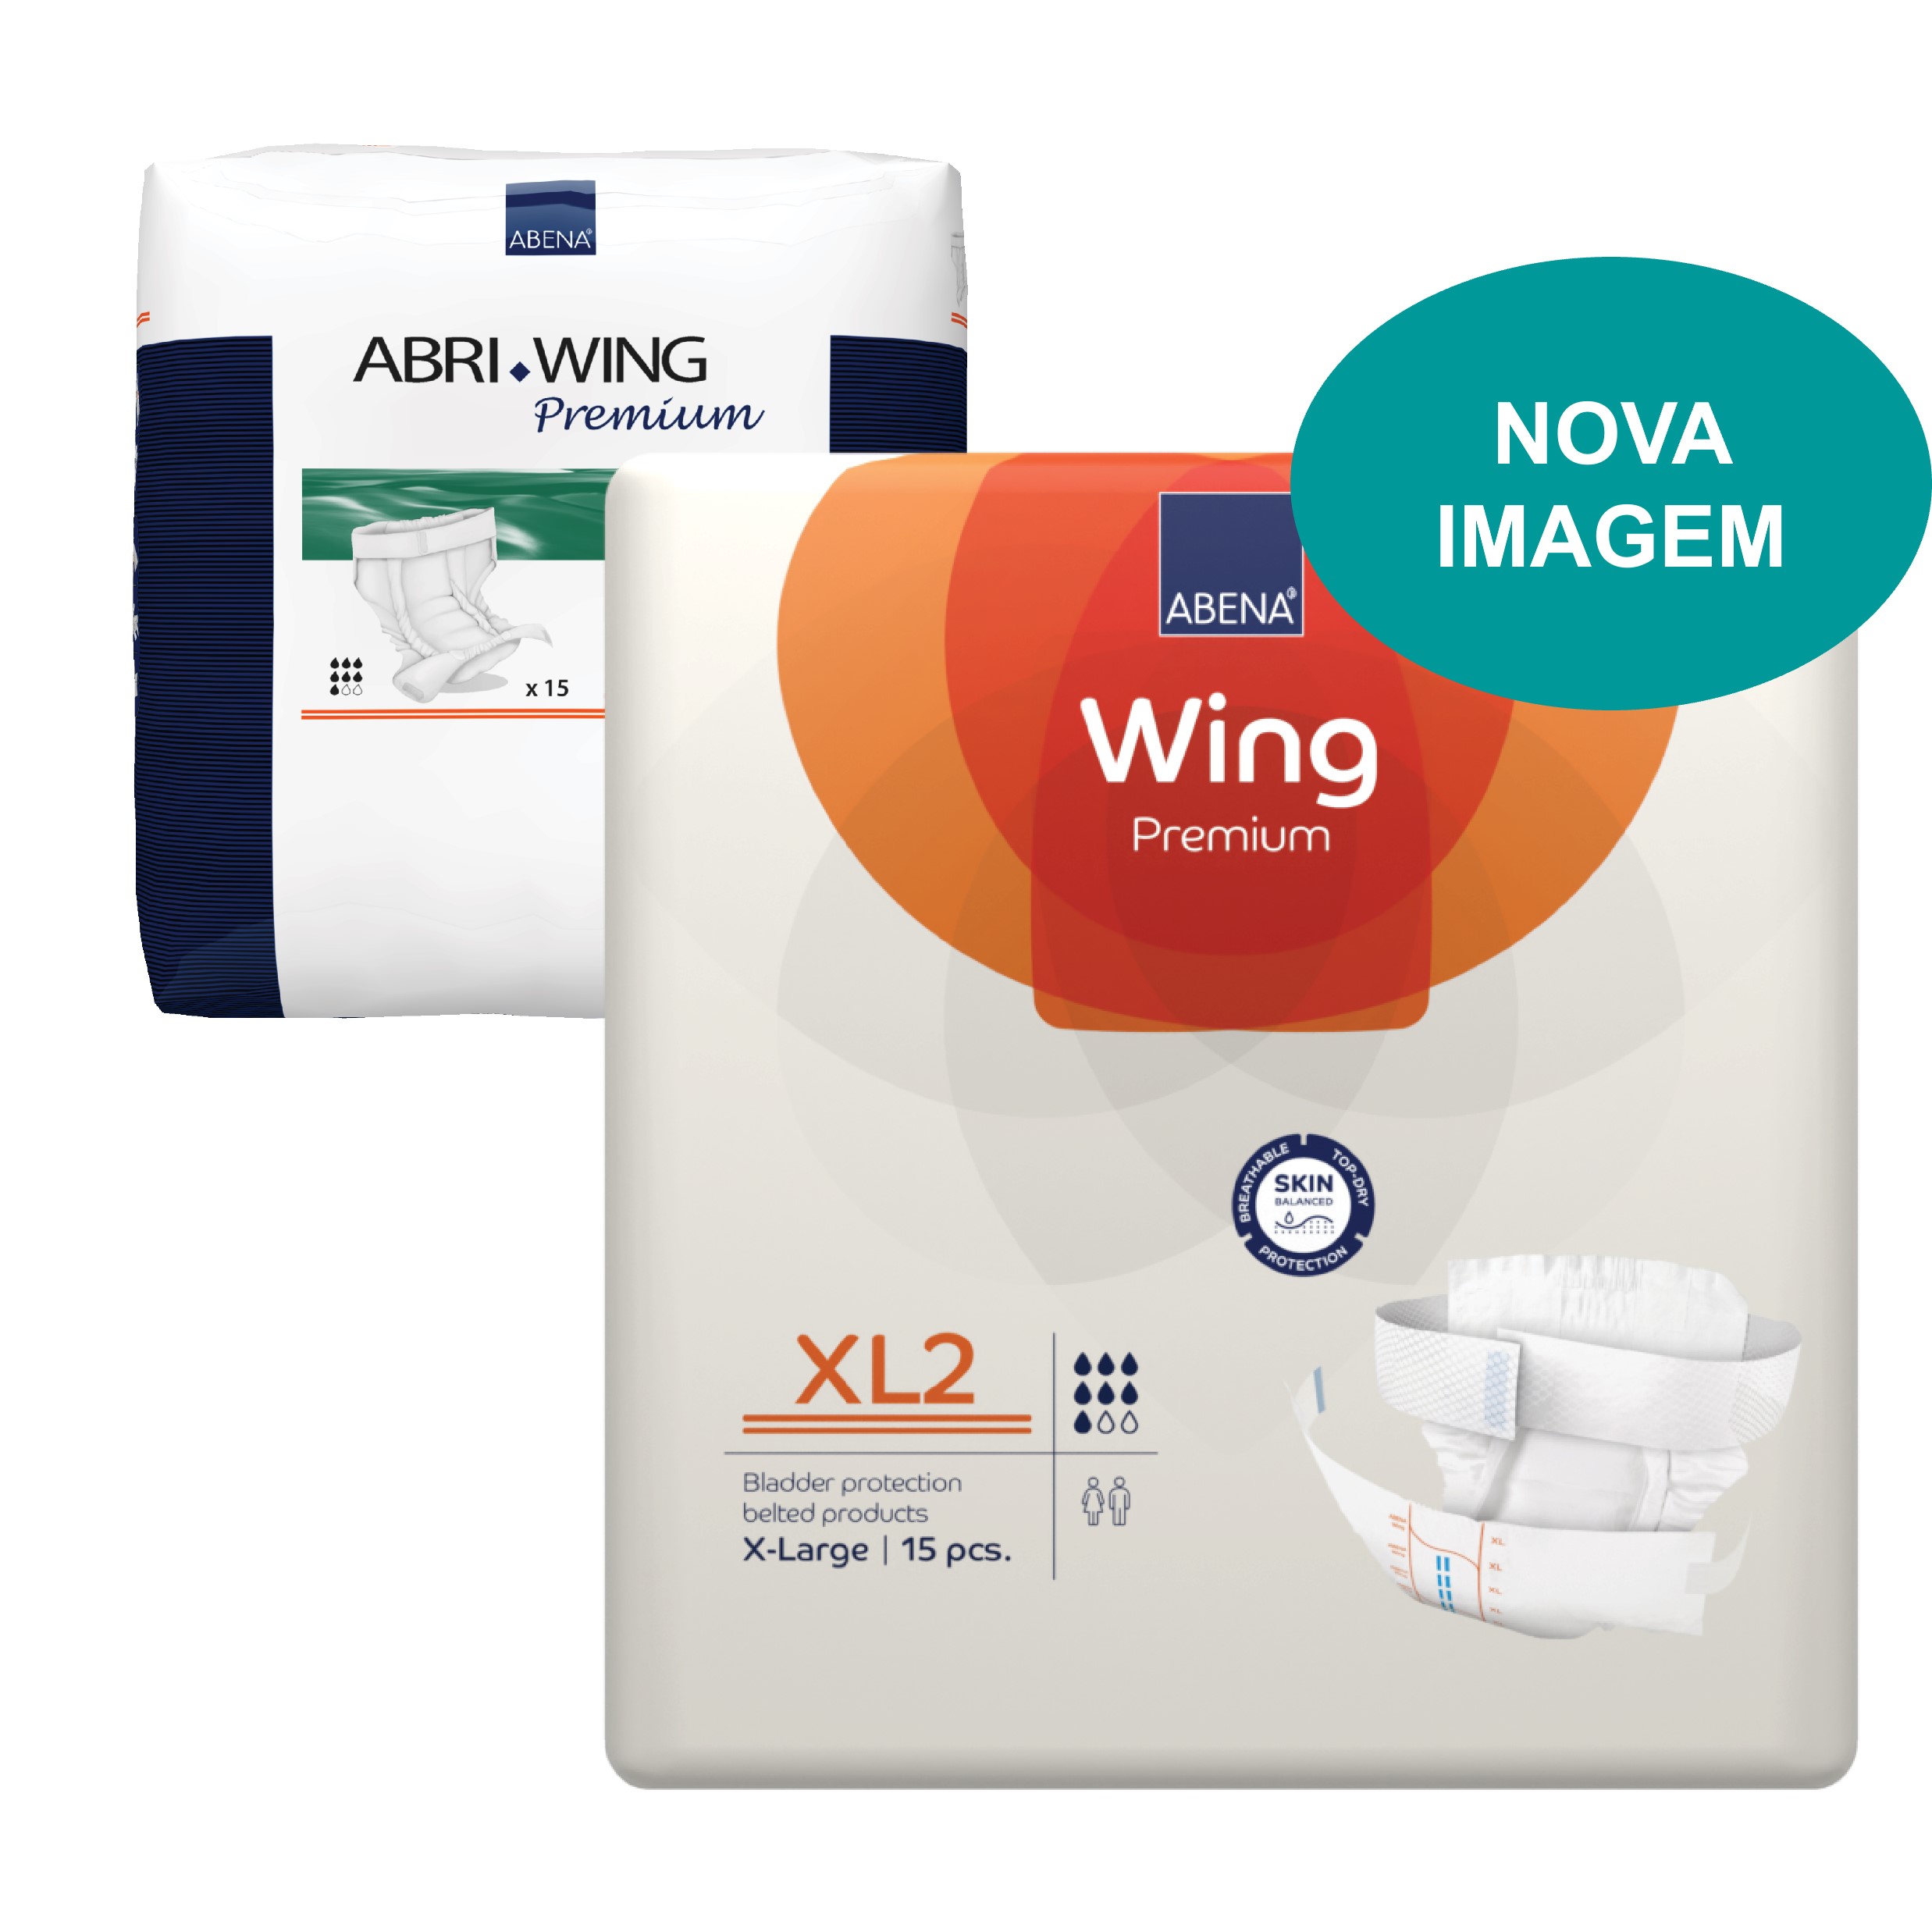 Abri-Wing Premium XL2